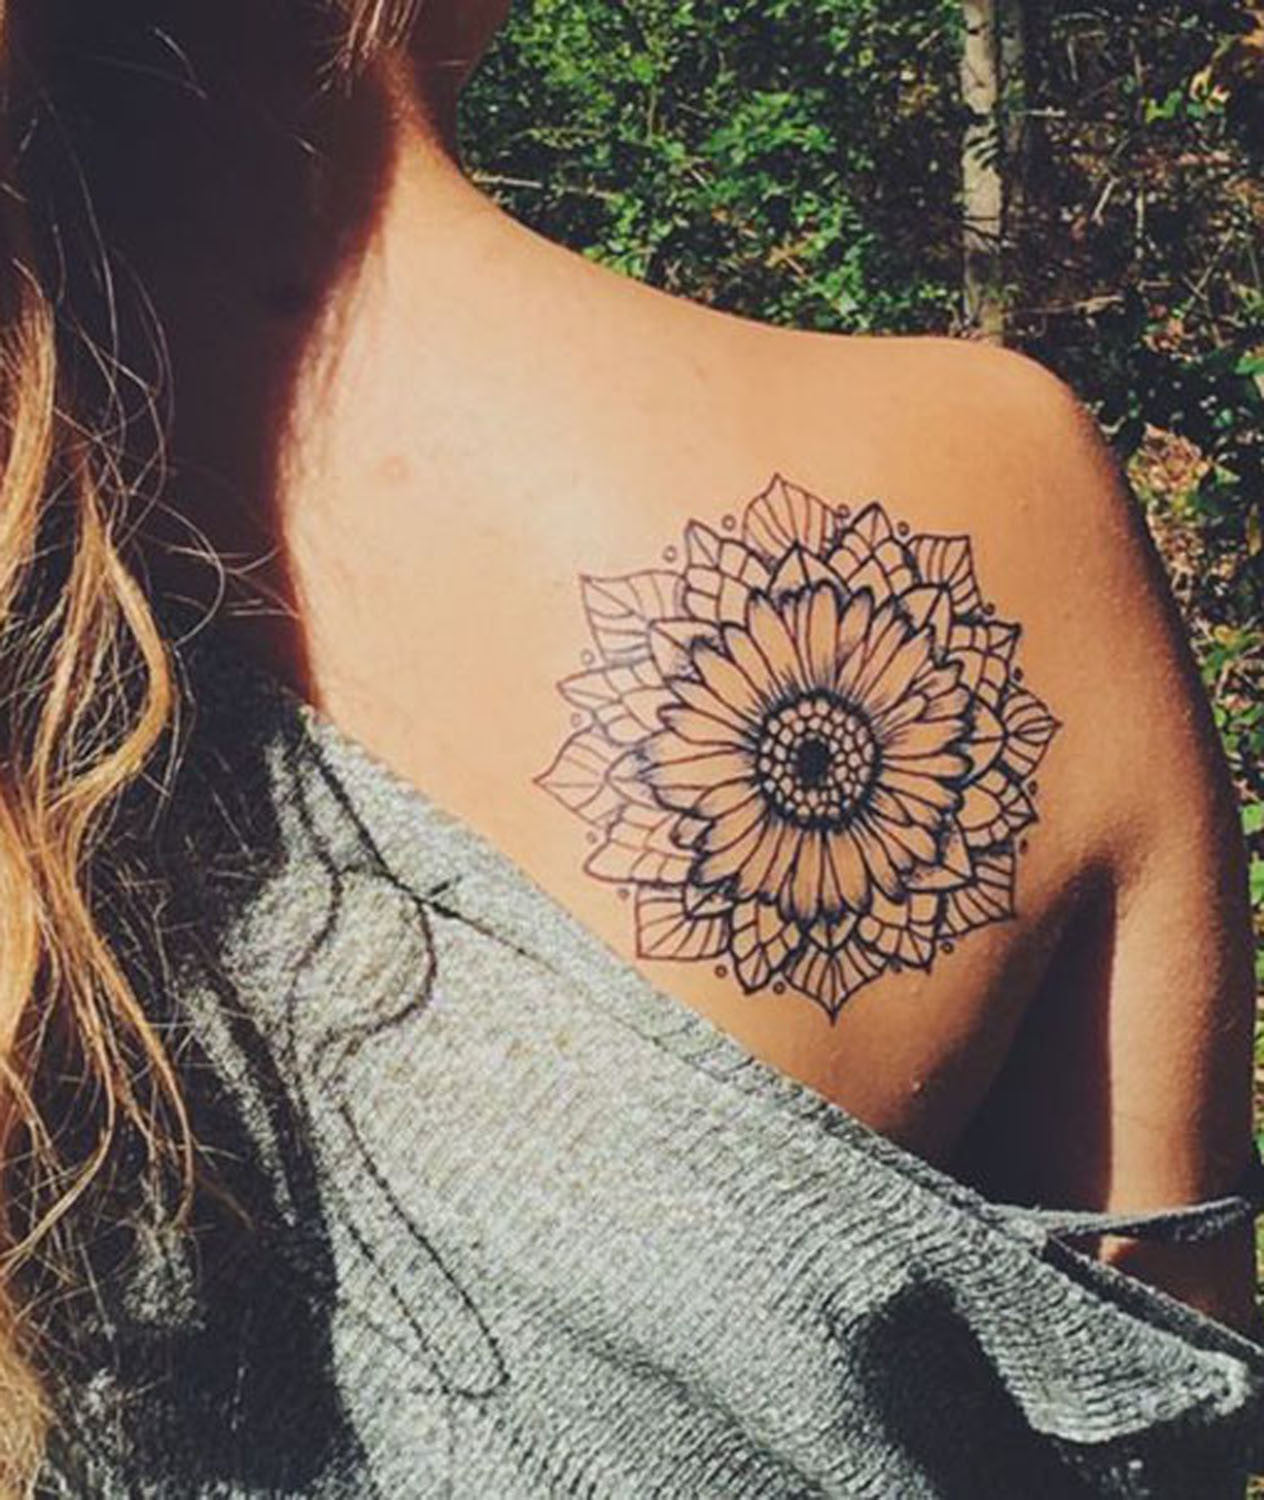 Mandala Sunflower Black and White Back Shoulder Tattoo Ideas at MyBodiArt.com